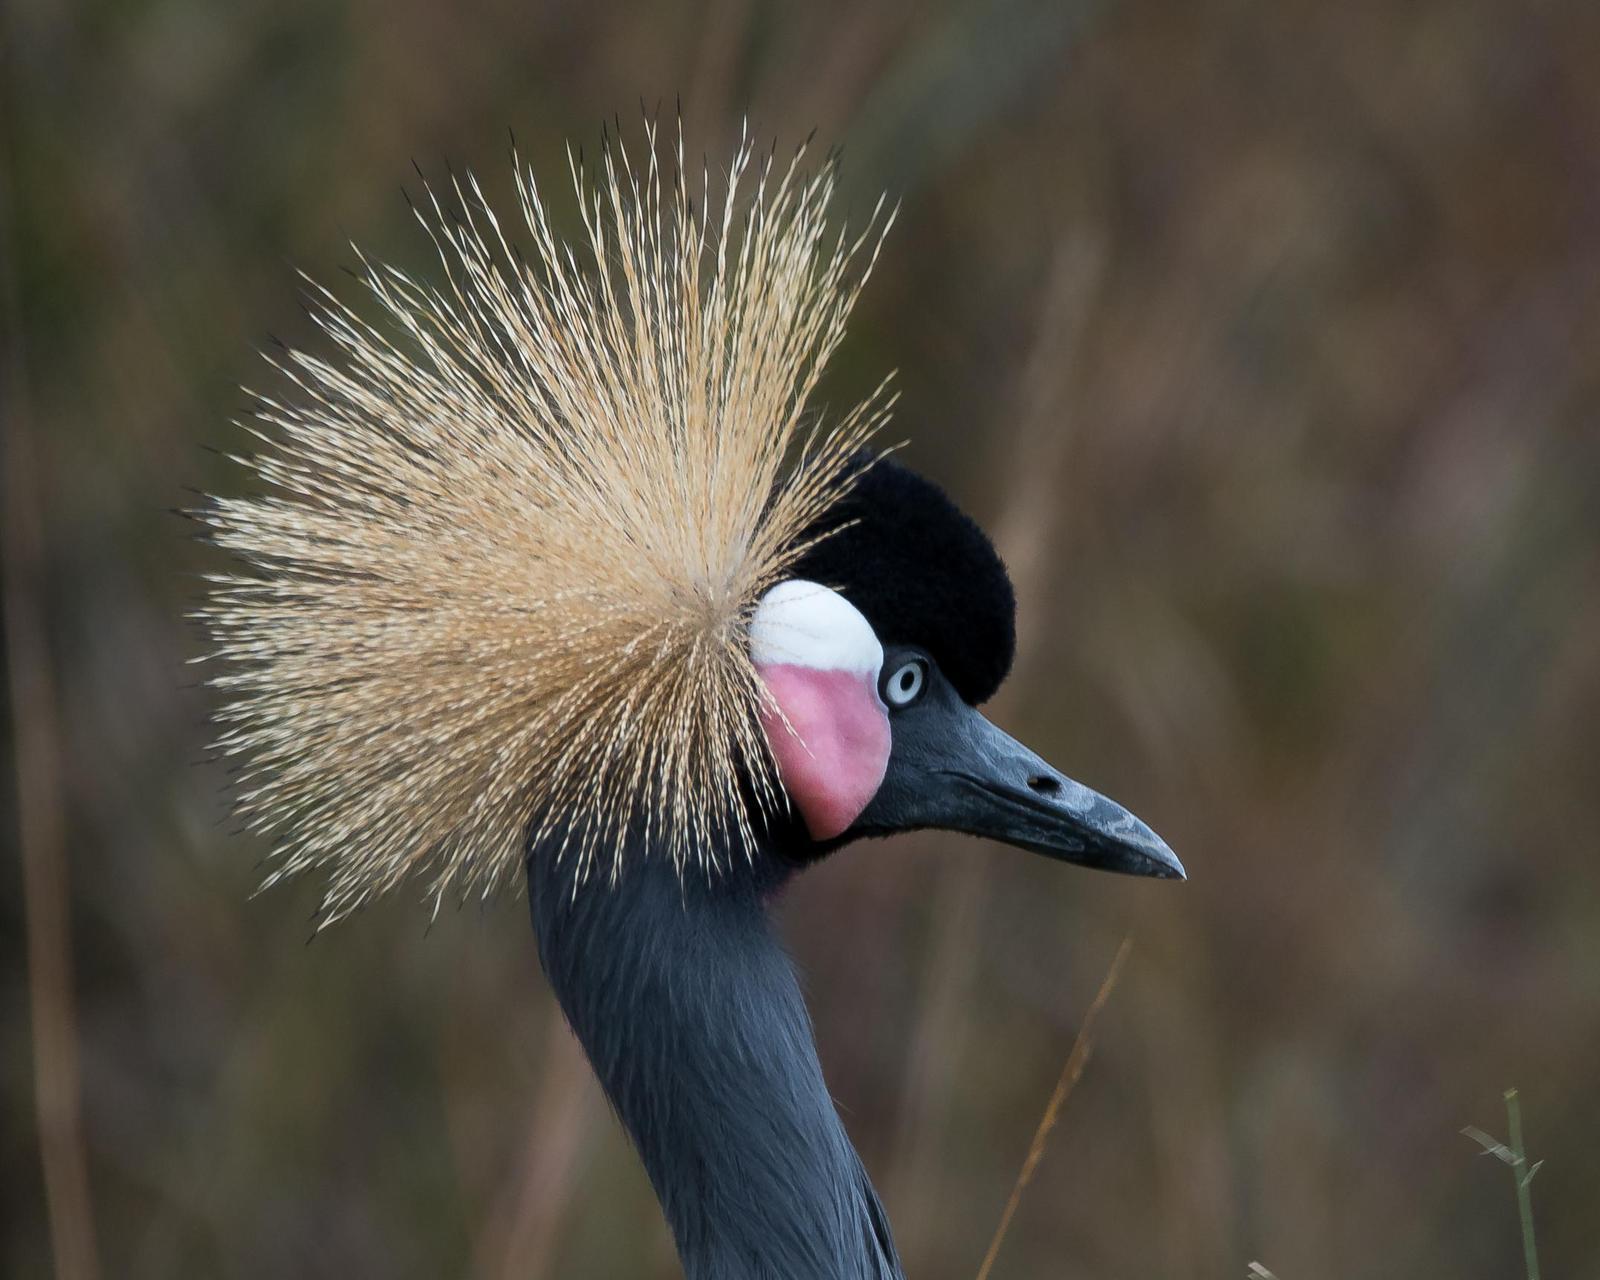 Black Crowned-Crane Photo by Gerald Hoekstra